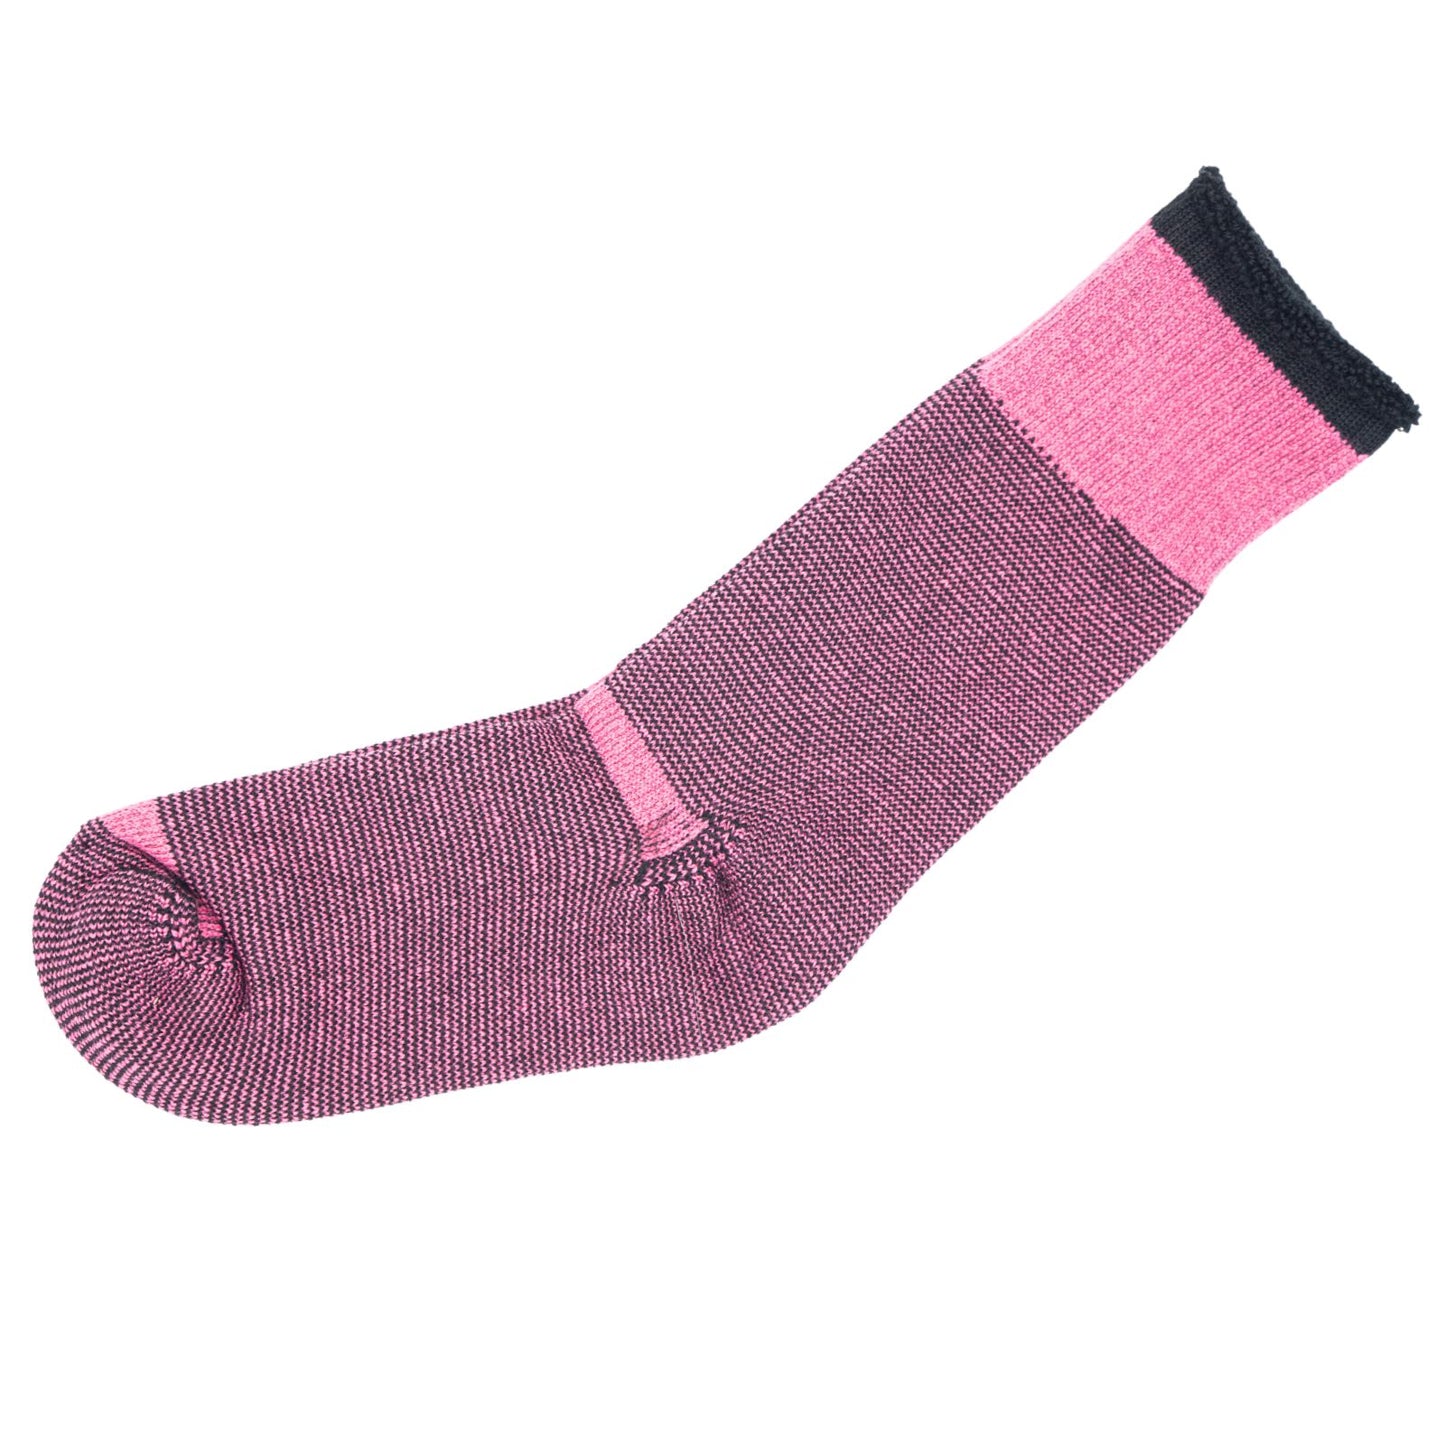 Ladies 6 Pairs Merino Wool Socks Hiking Home Double Thickness